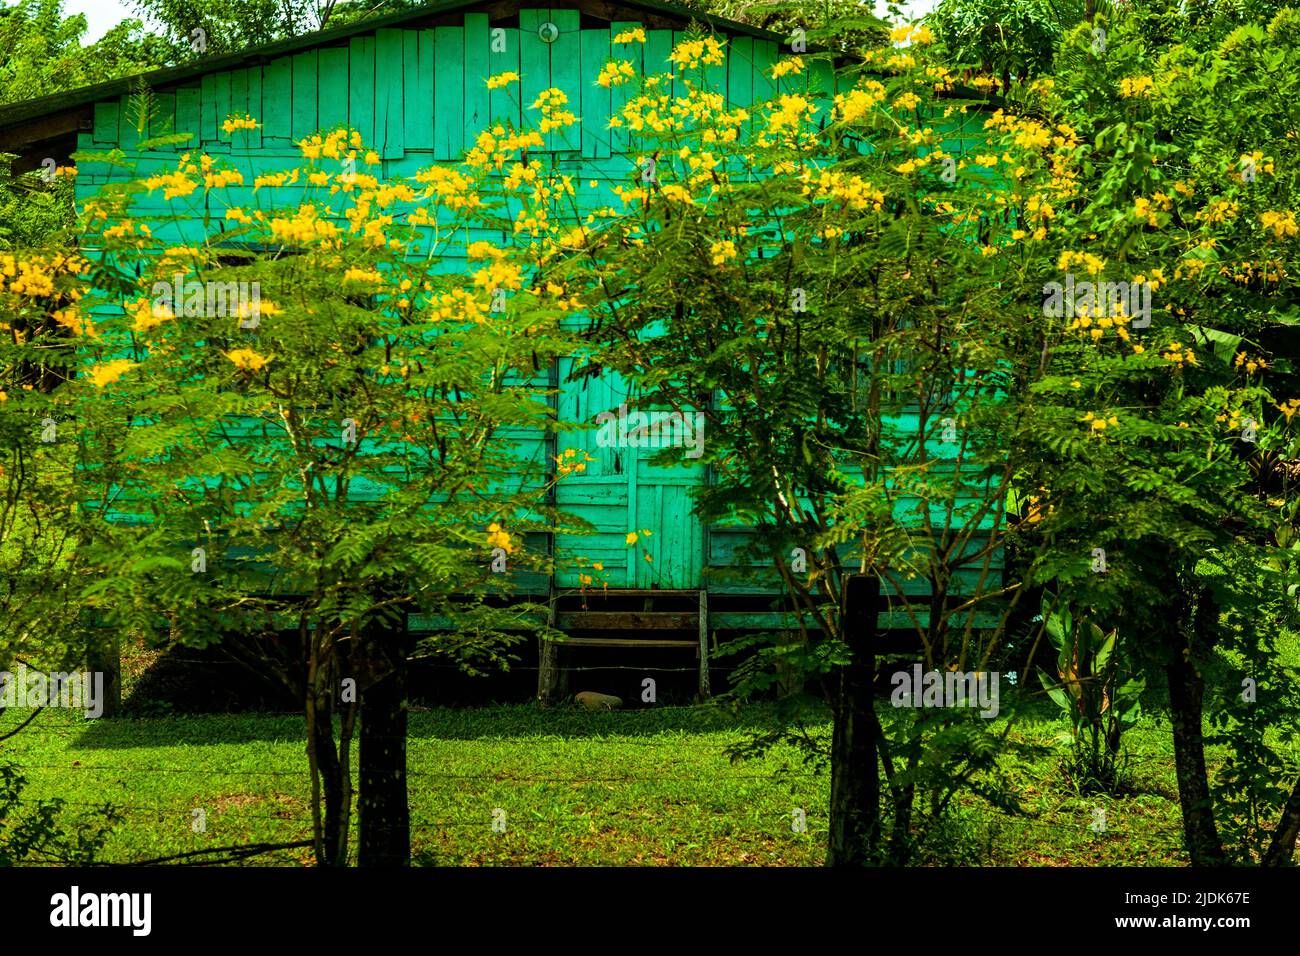 Piccolo gruppo di alberi con fiori gialli fiaccano il cortile di fronte a questa piccola casa turchese o capanna. Foto Stock